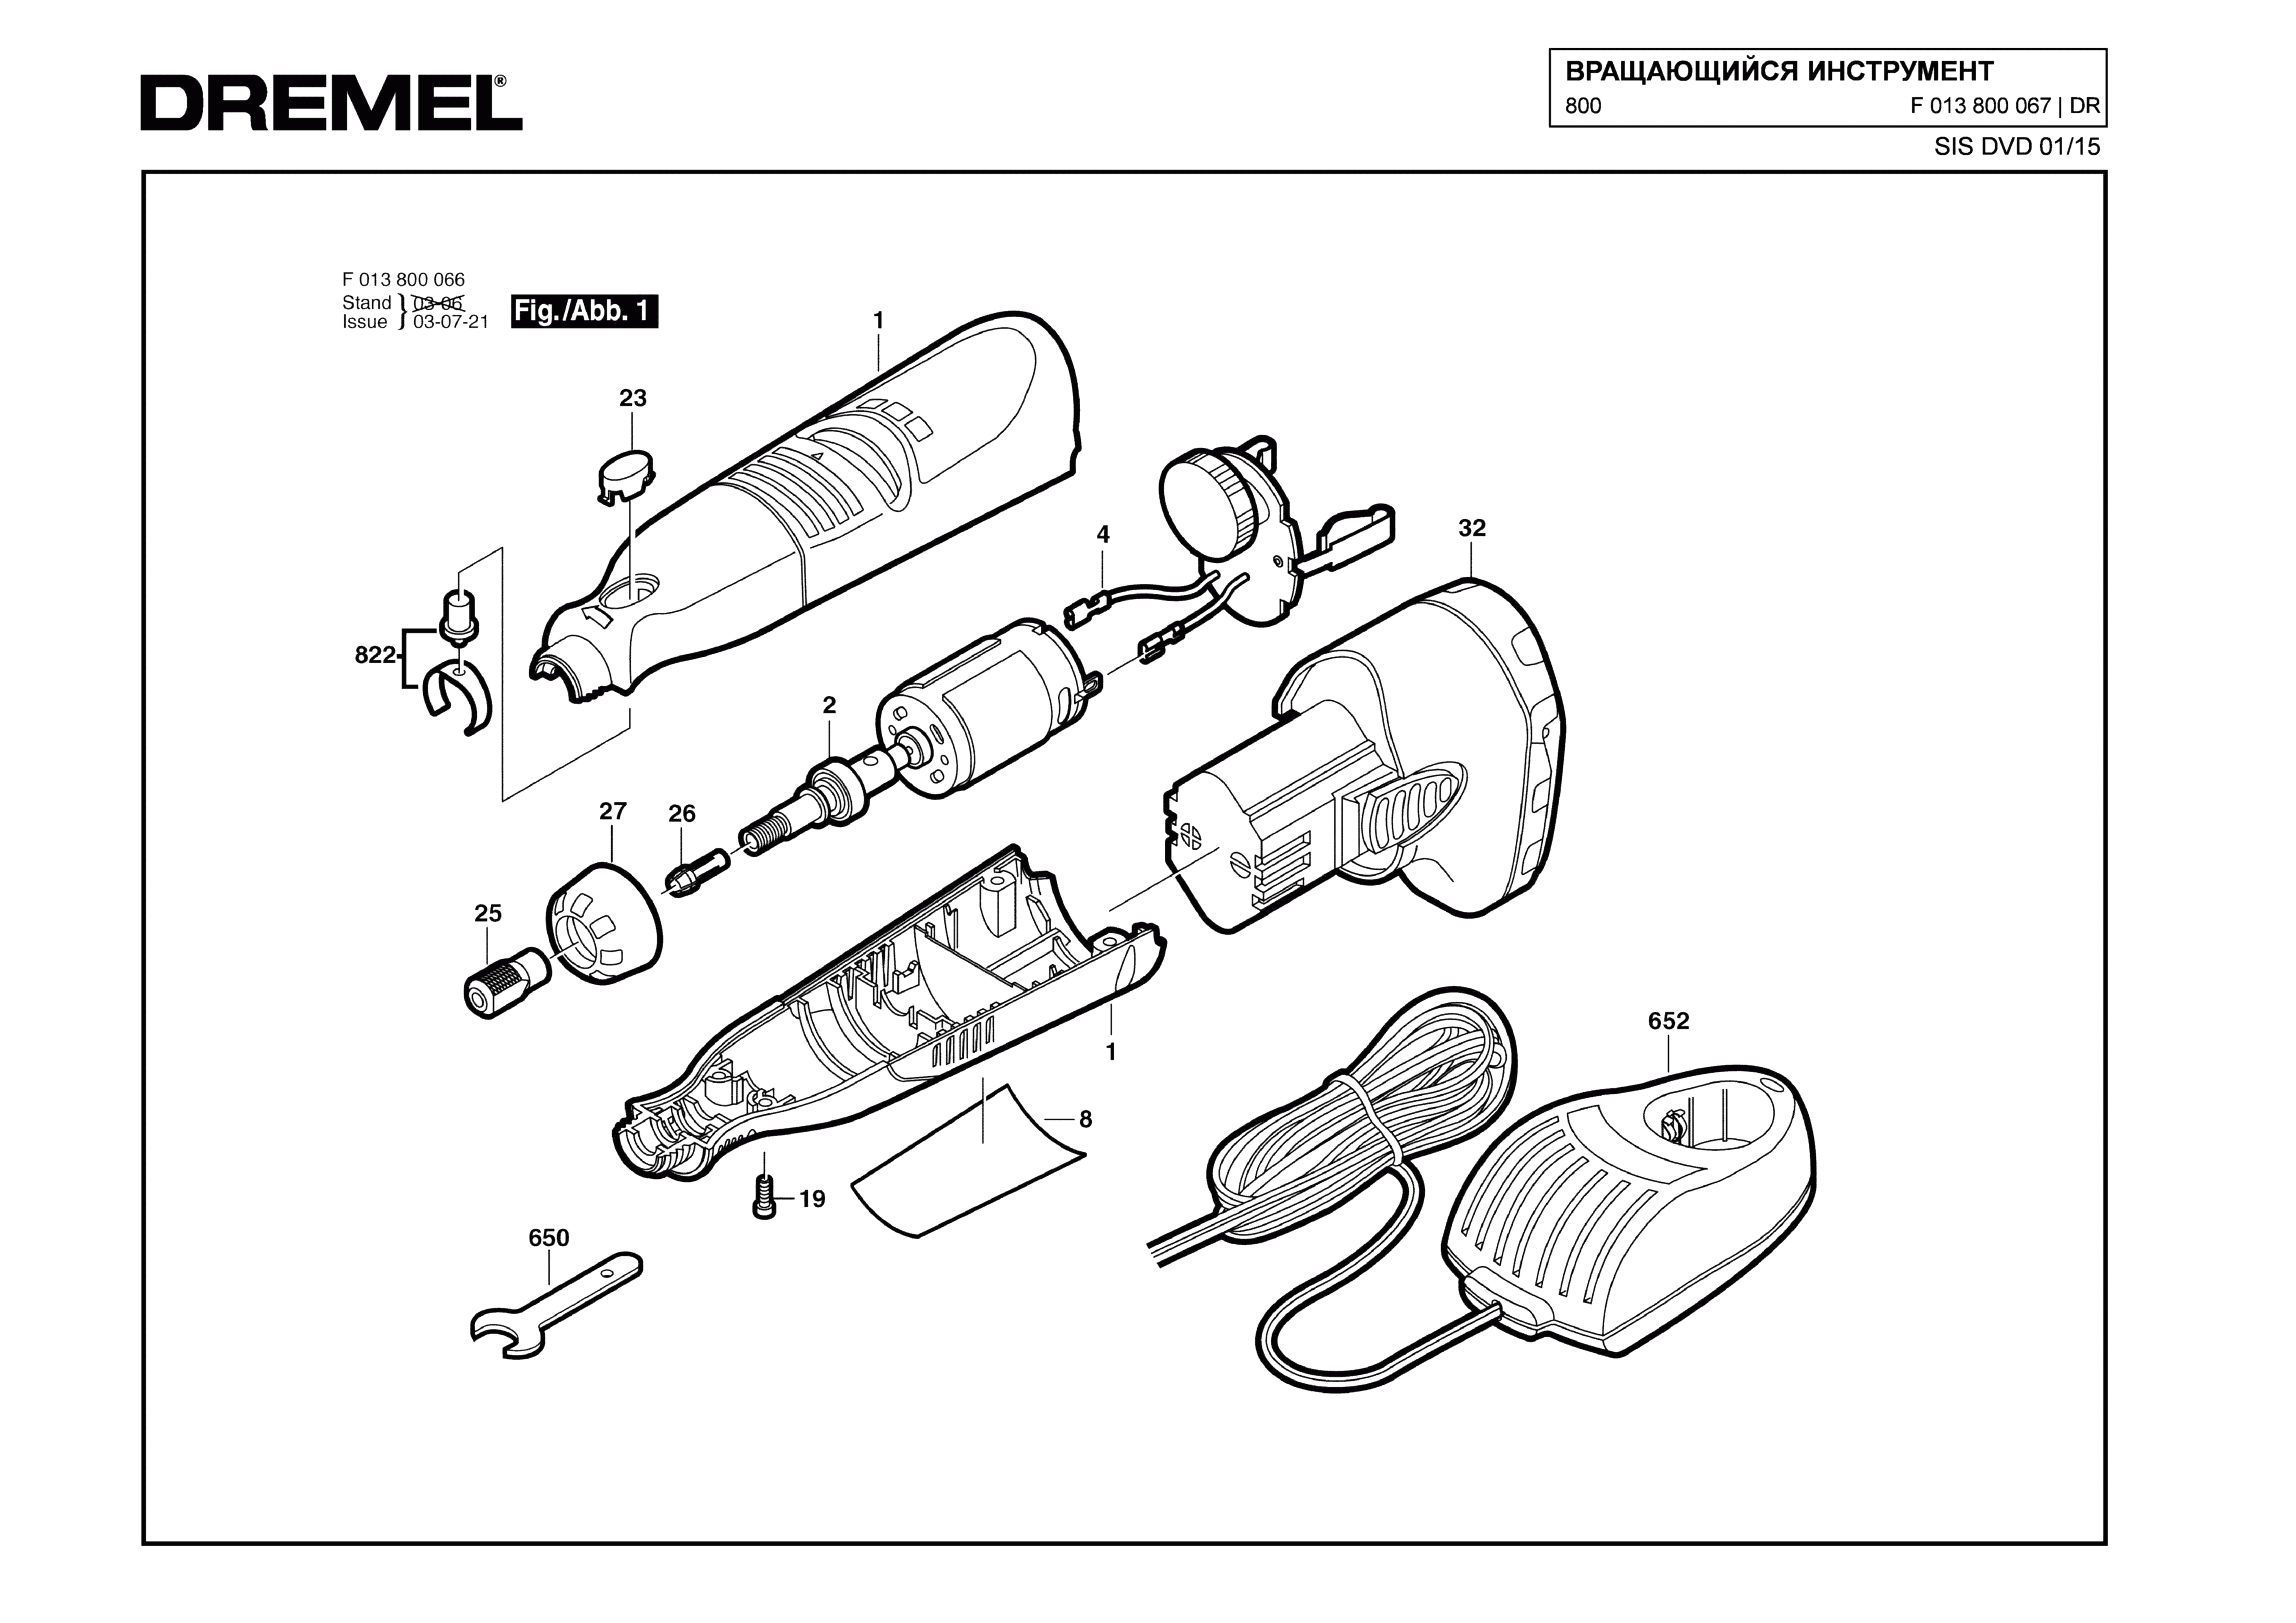 Шлифовальная машина Dremel 800 (ТИП F013800067)